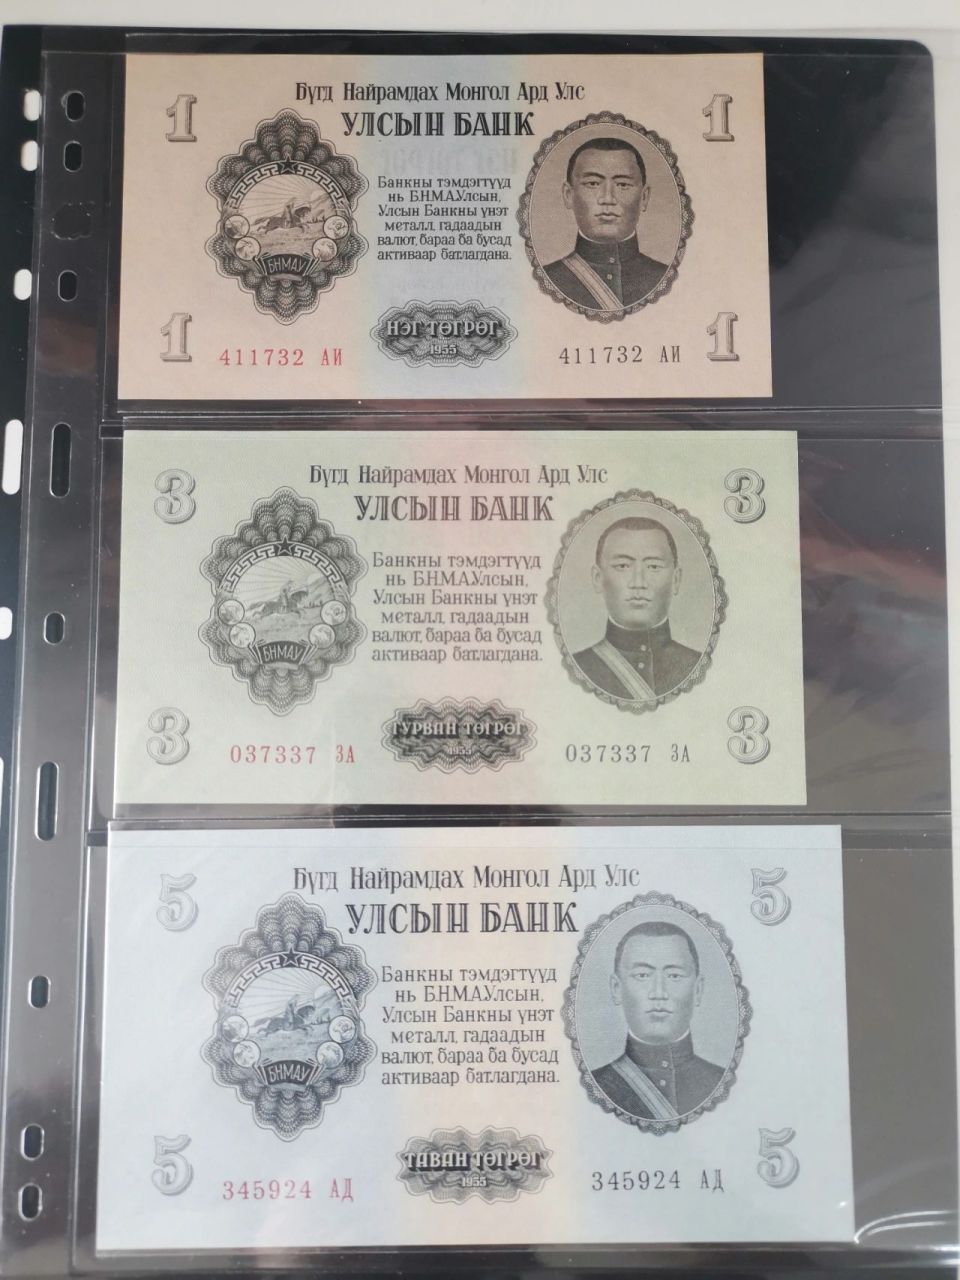 蒙古1955年图格里克套钞 蒙古1955年图格里克套钞